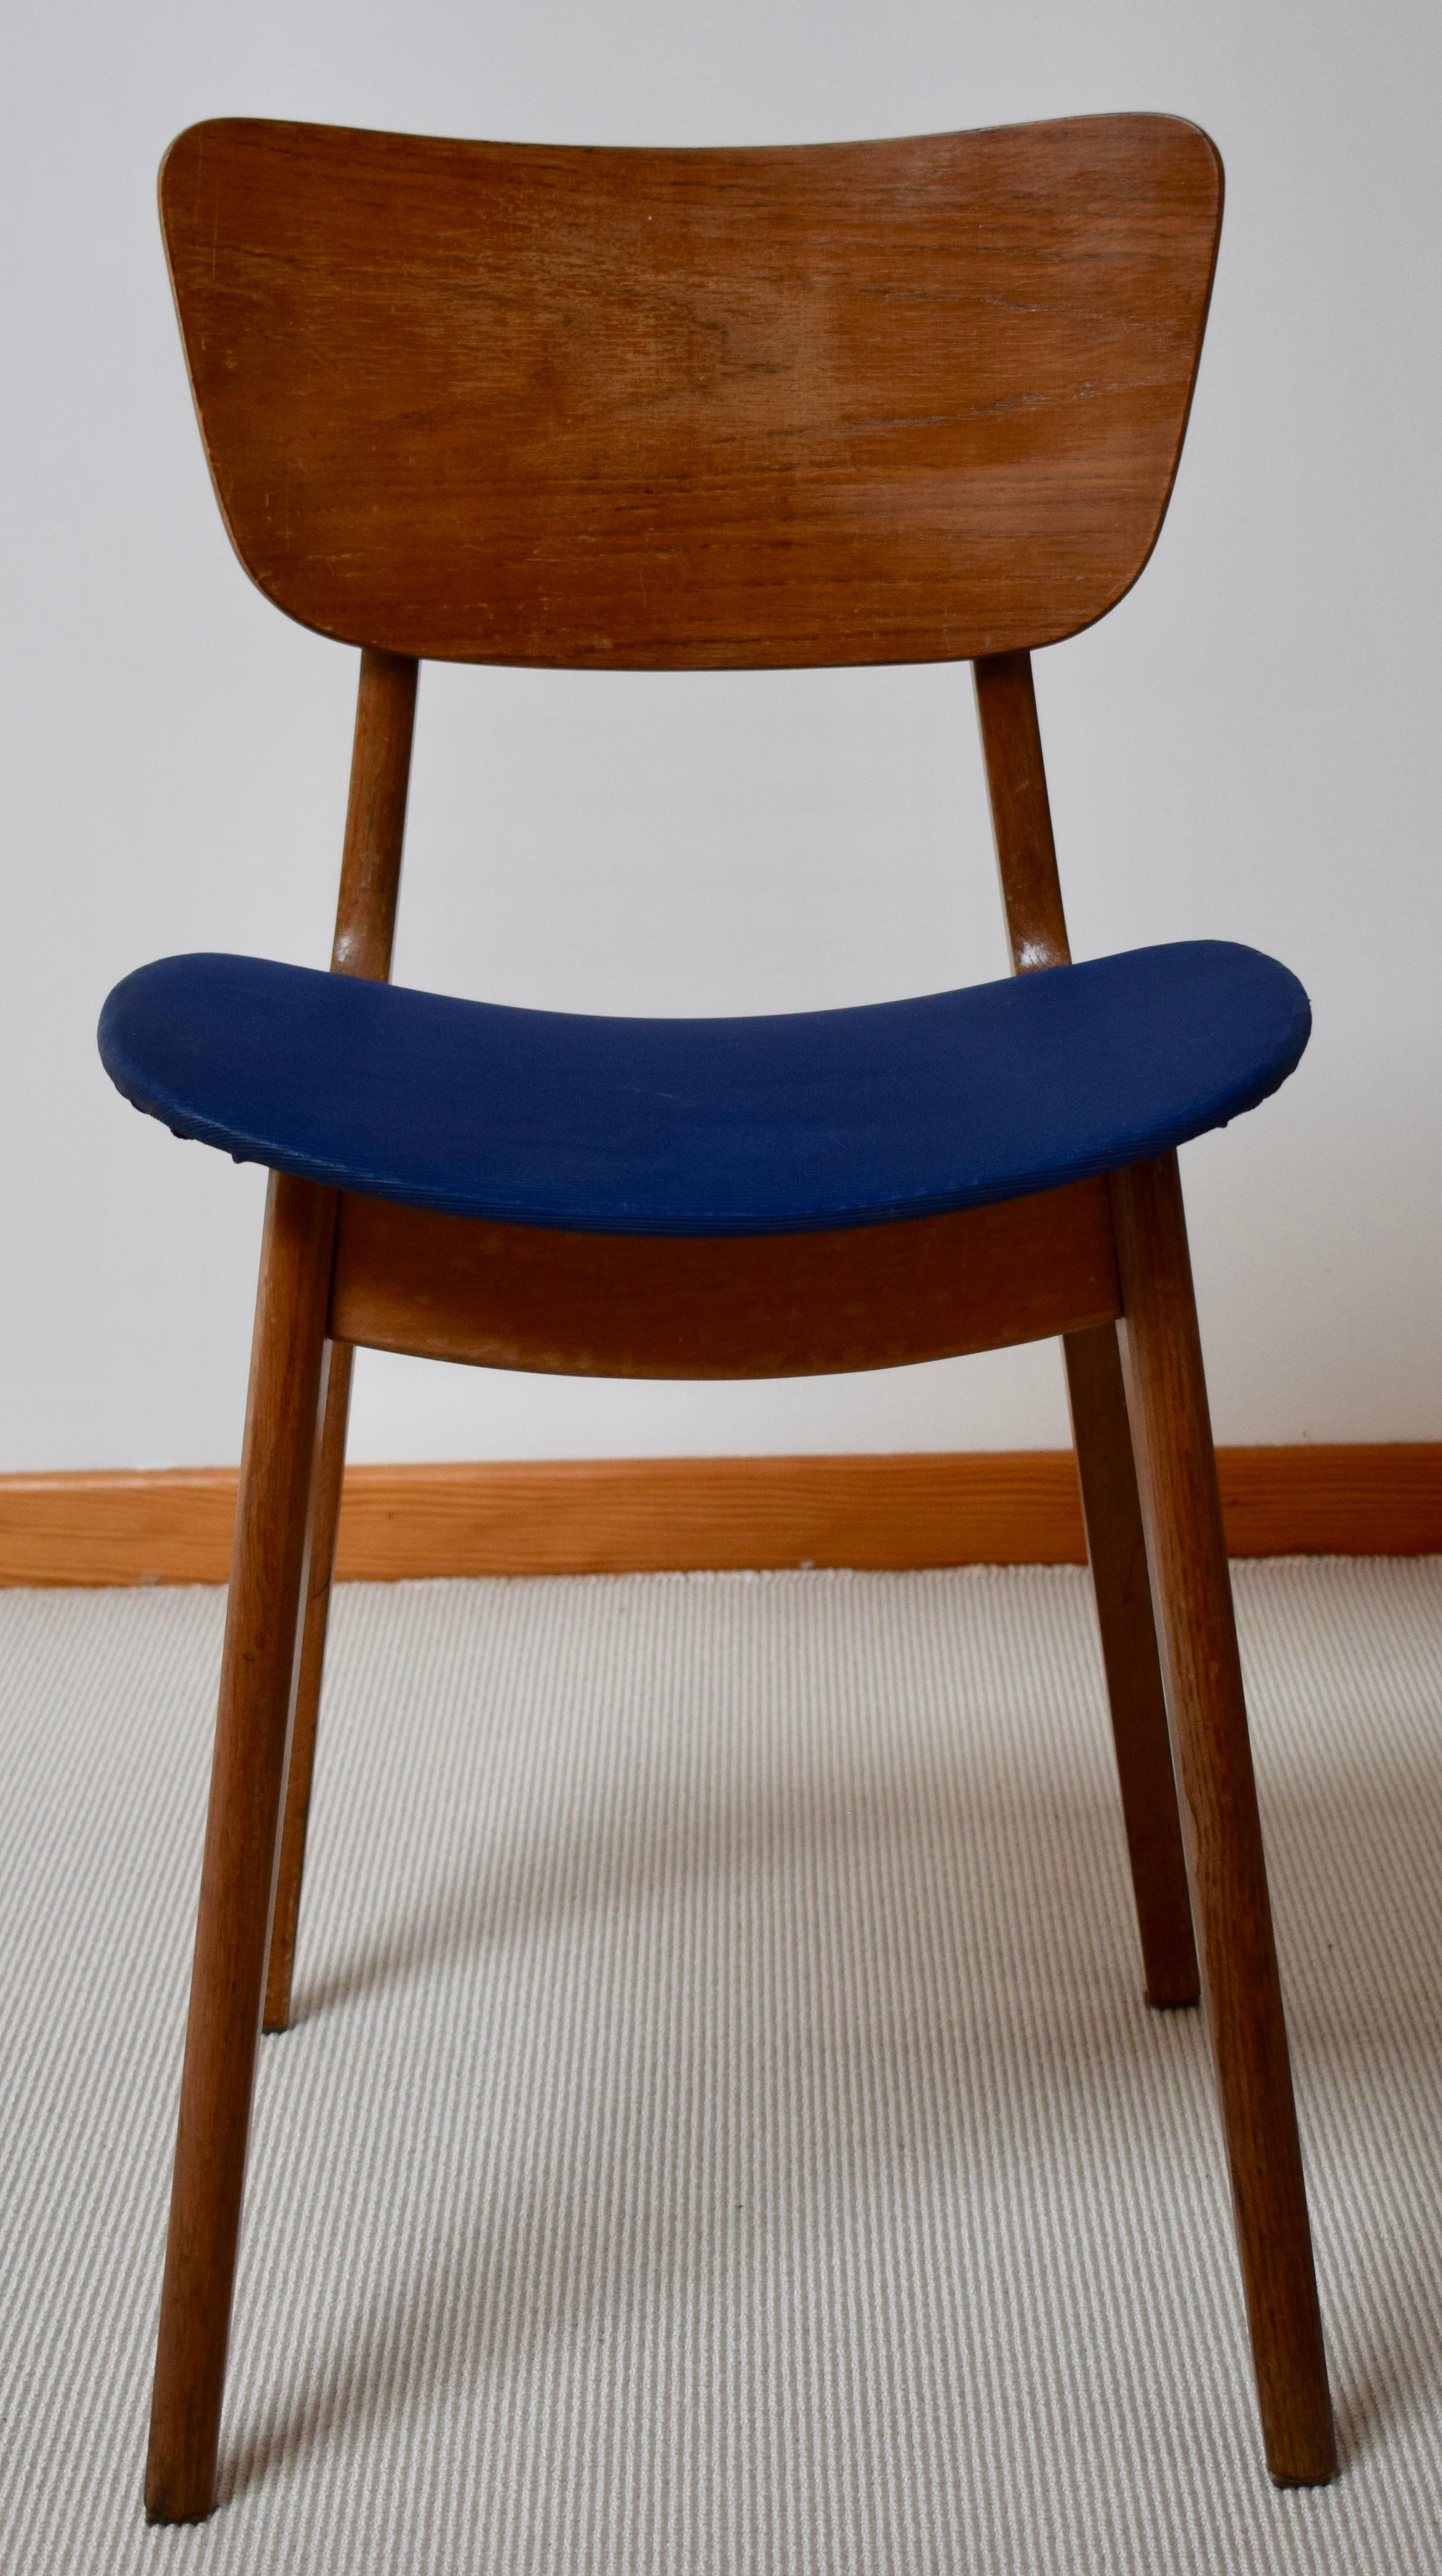 Chaise 6157 de Roger Landault
Cette chaise des années 50 a été éditée par Boutier.  Structure, dossier et assise en bois. L'assise est garnie d'un revêtement style skai de couleur bleu.

Longueur : 40 cm
Hauteur : 73 cm
Profondeur : 46 cm